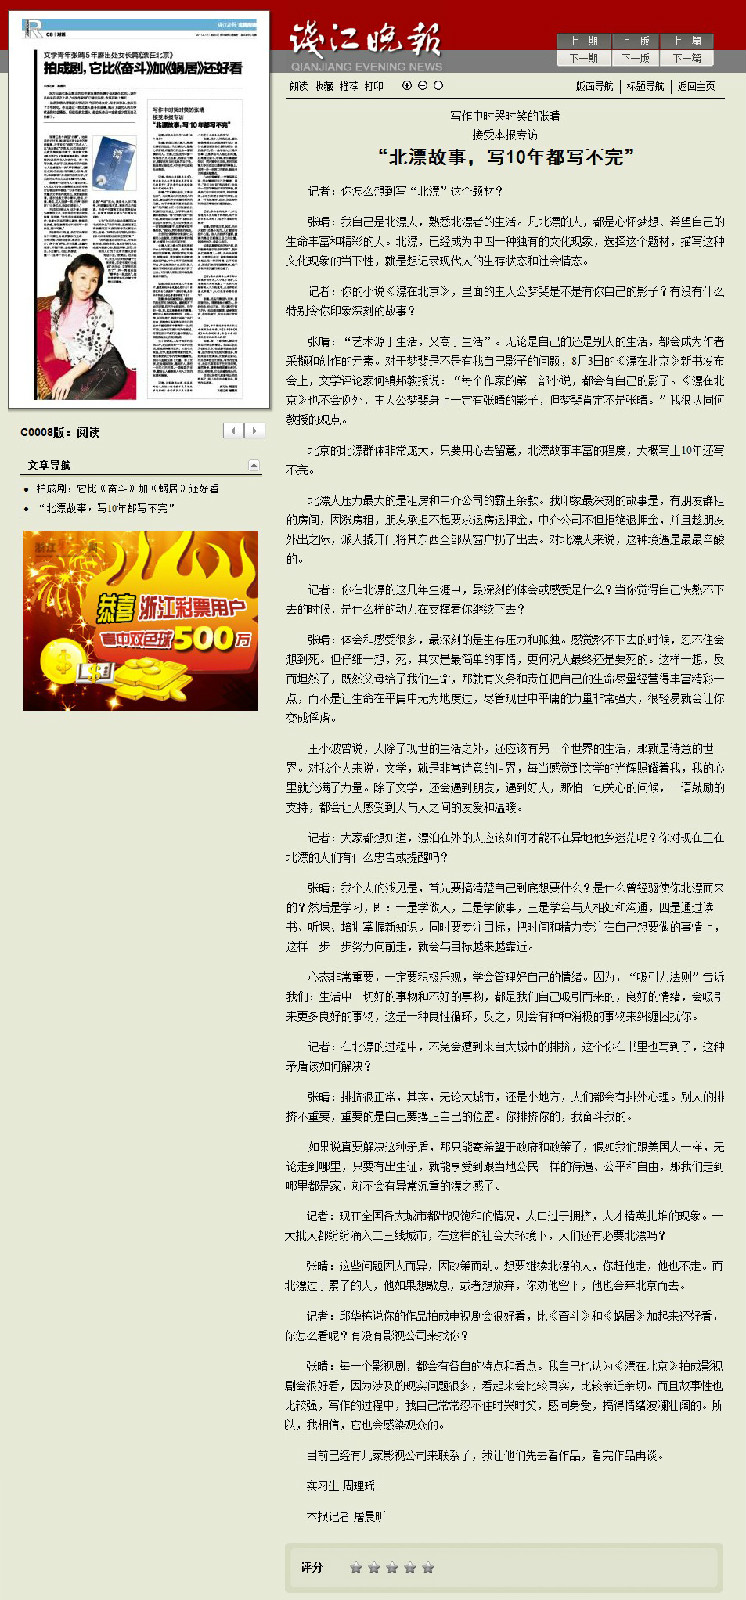 《錢江晚報》採訪《漂在北京》2